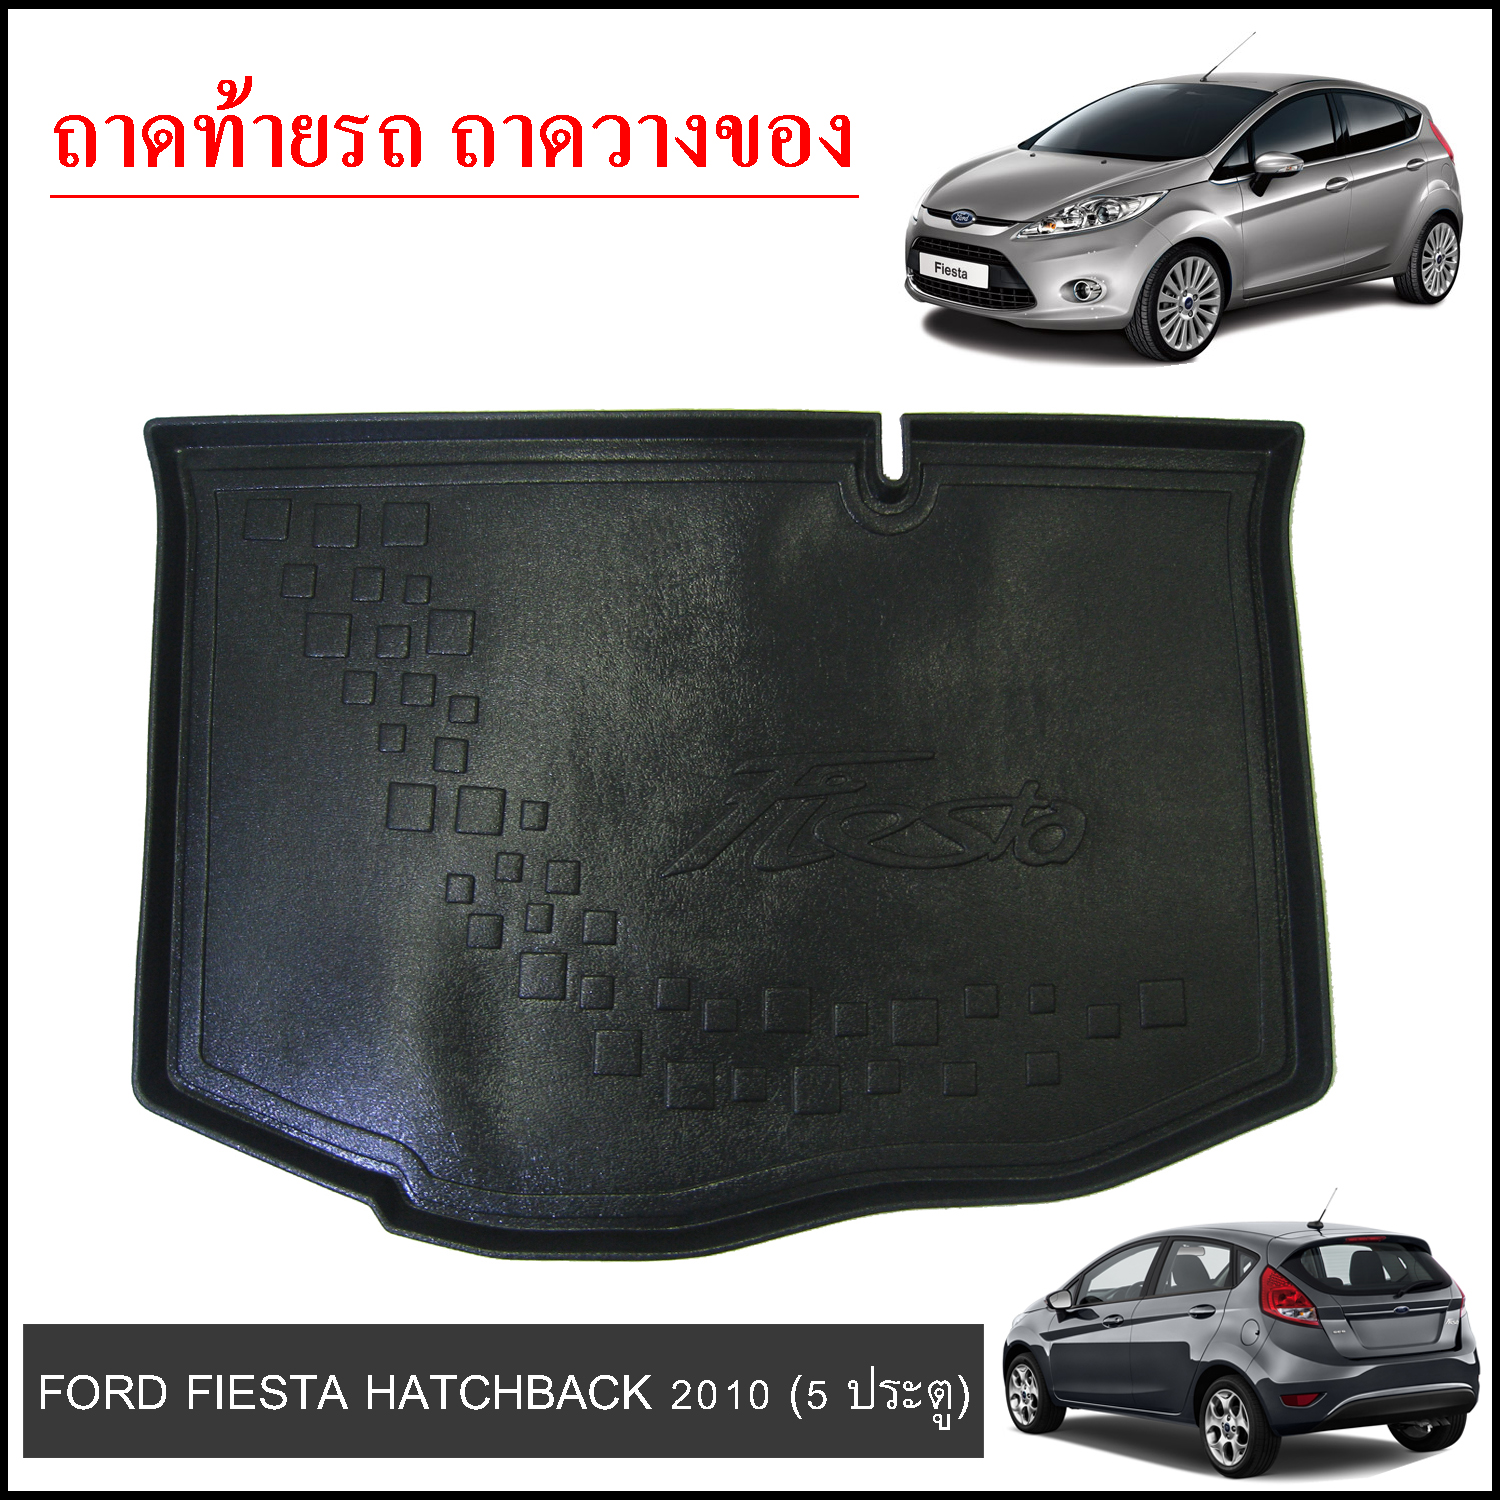 Ford Fiesta hatchback